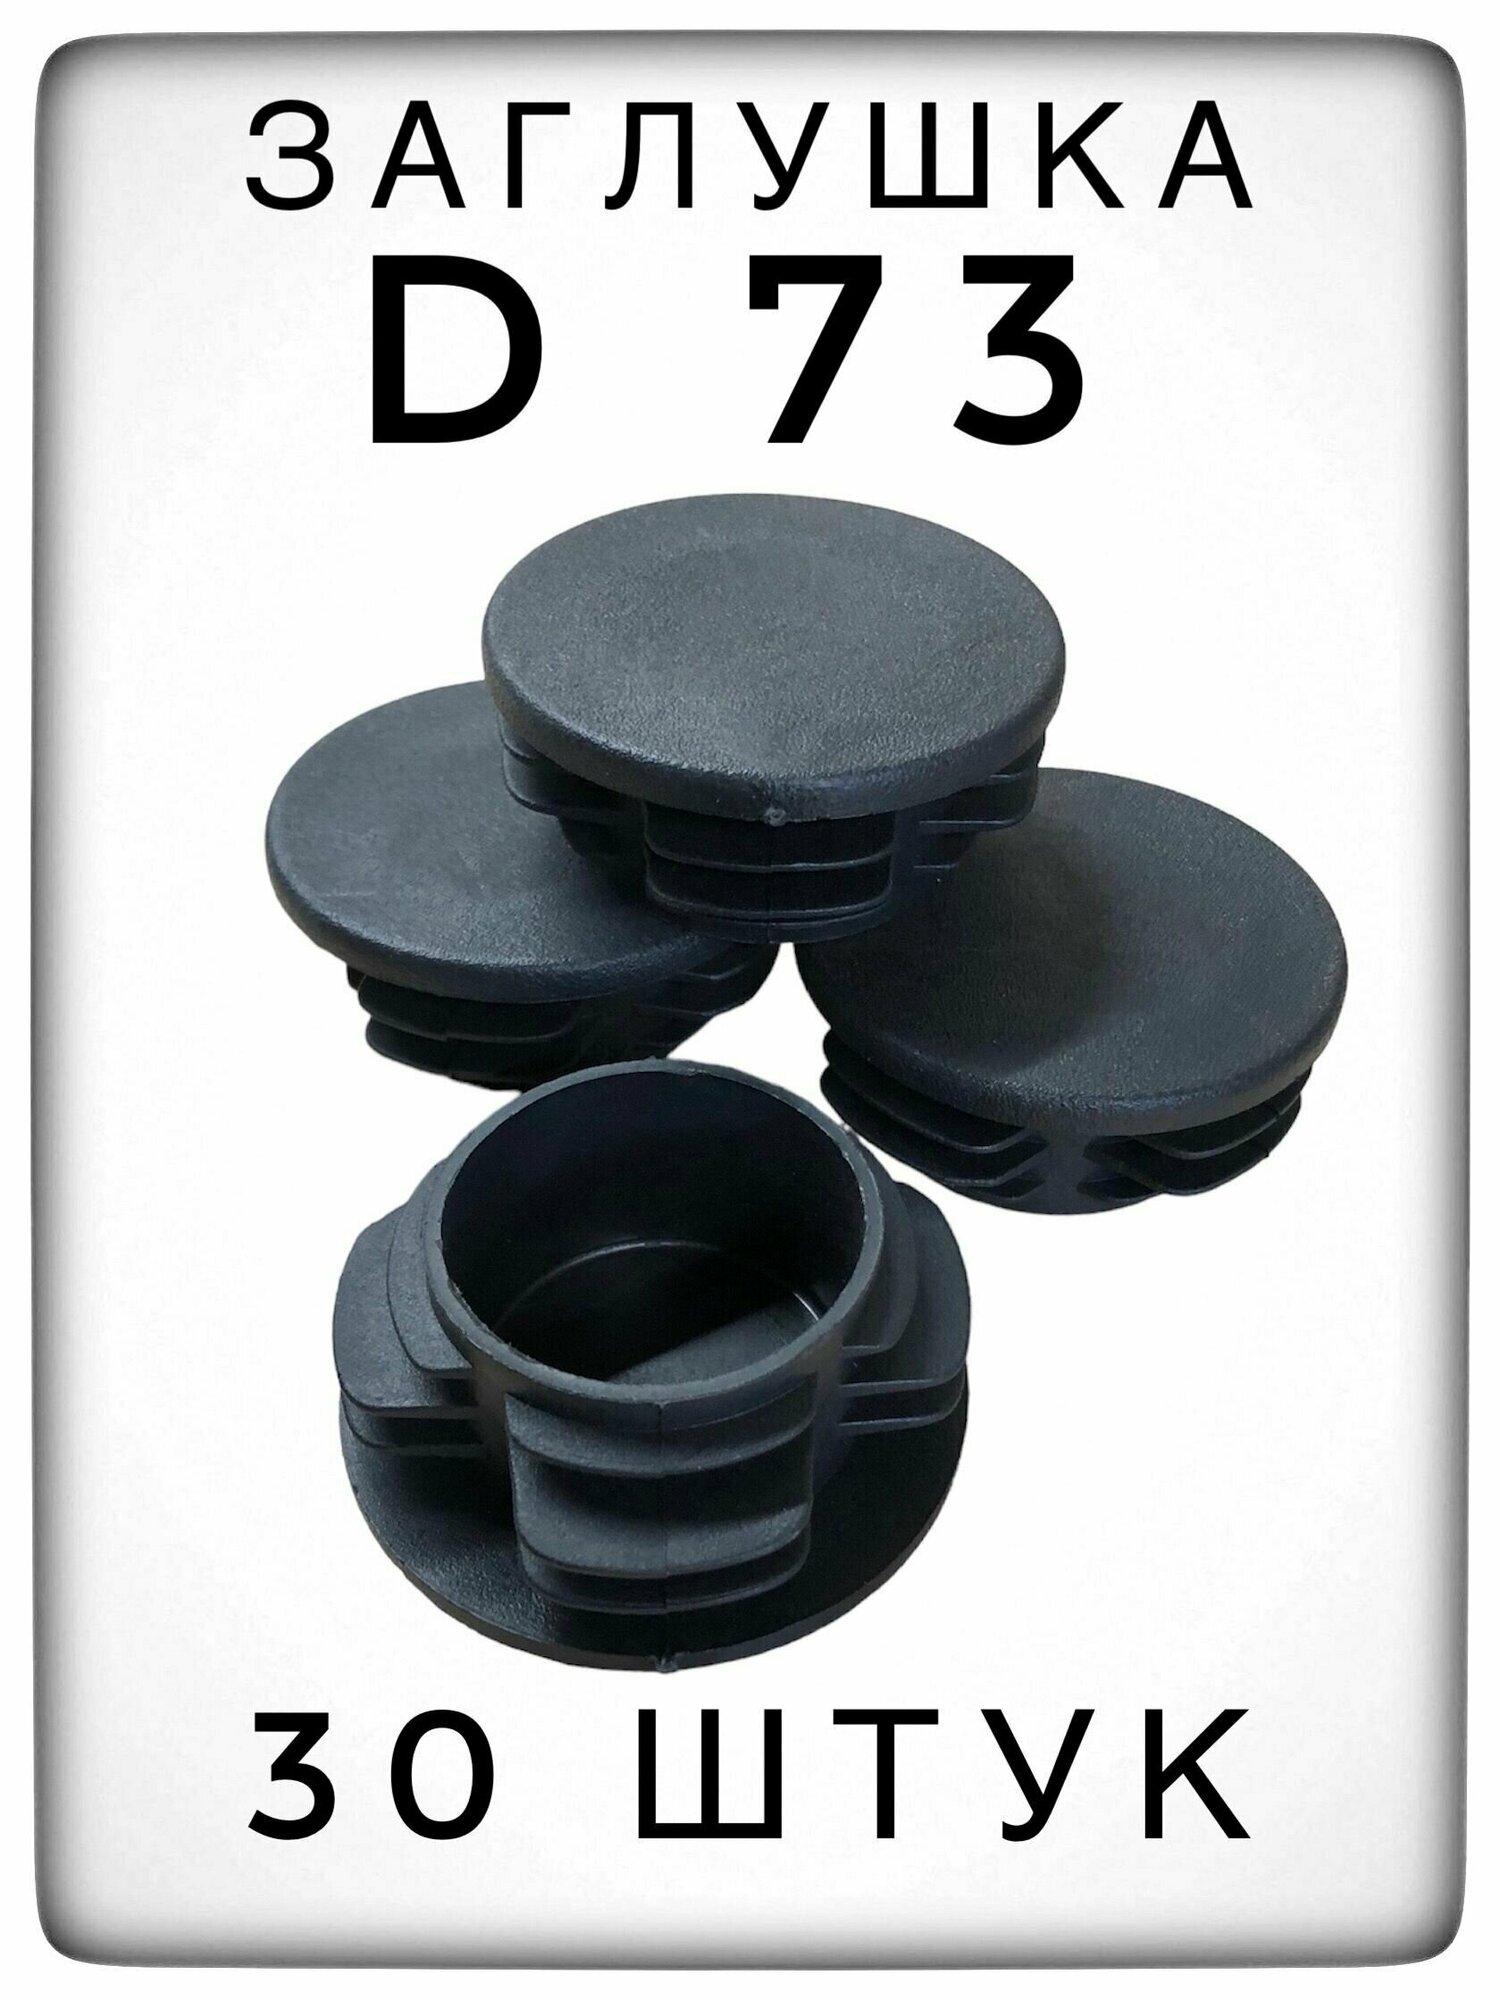 Заглушка Д73 (30 штук) пластиковая для металлической трубы НКТ